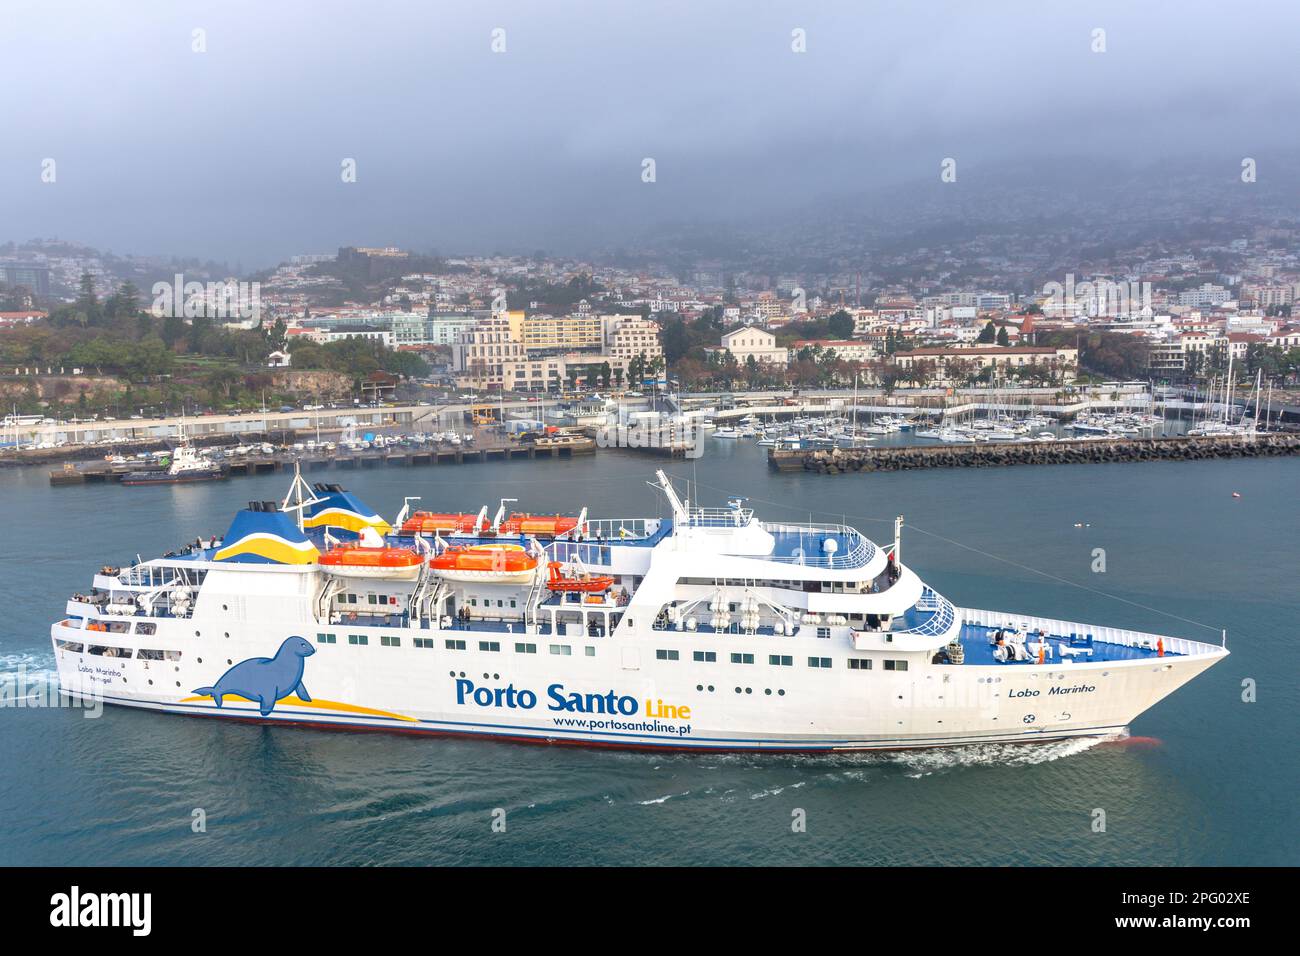 Porto Santo Line ferry 'Lobo Marinho' entrant dans le port, Funchal, Madère, Portugal Banque D'Images